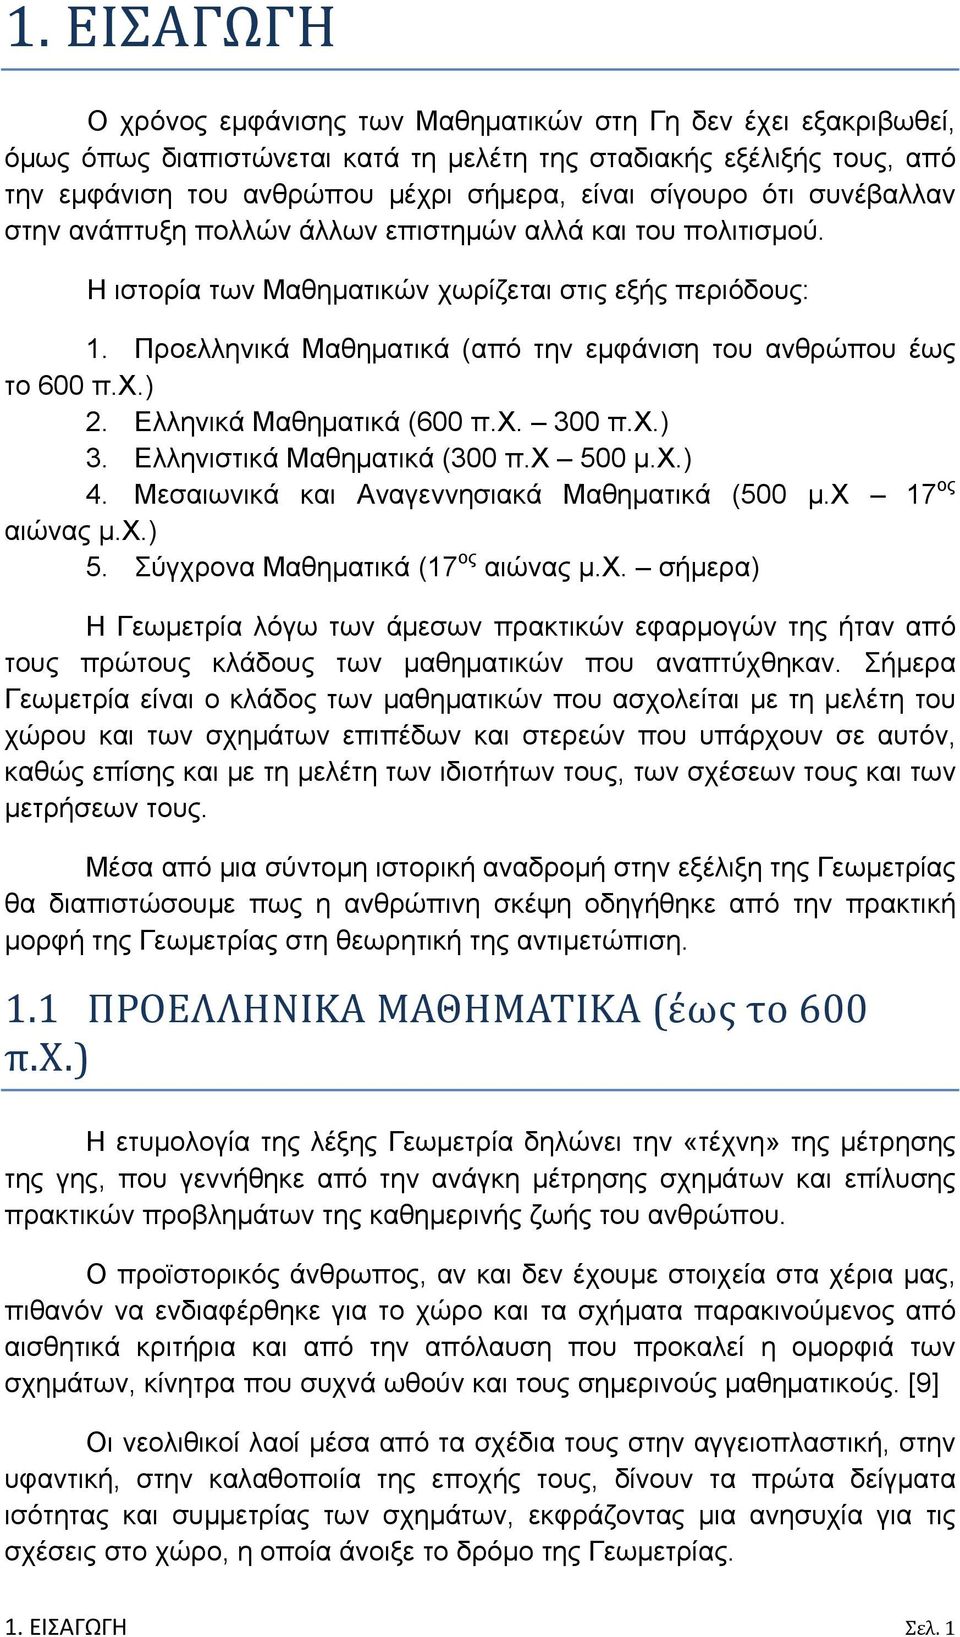 Προελληνικά Μαθηματικά (από την εμφάνιση του ανθρώπου έως το 600 π.χ.). Ελληνικά Μαθηματικά (600 π.χ. 300 π.χ.) 3. Ελληνιστικά Μαθηματικά (300 π.χ 500 μ.χ.) 4.